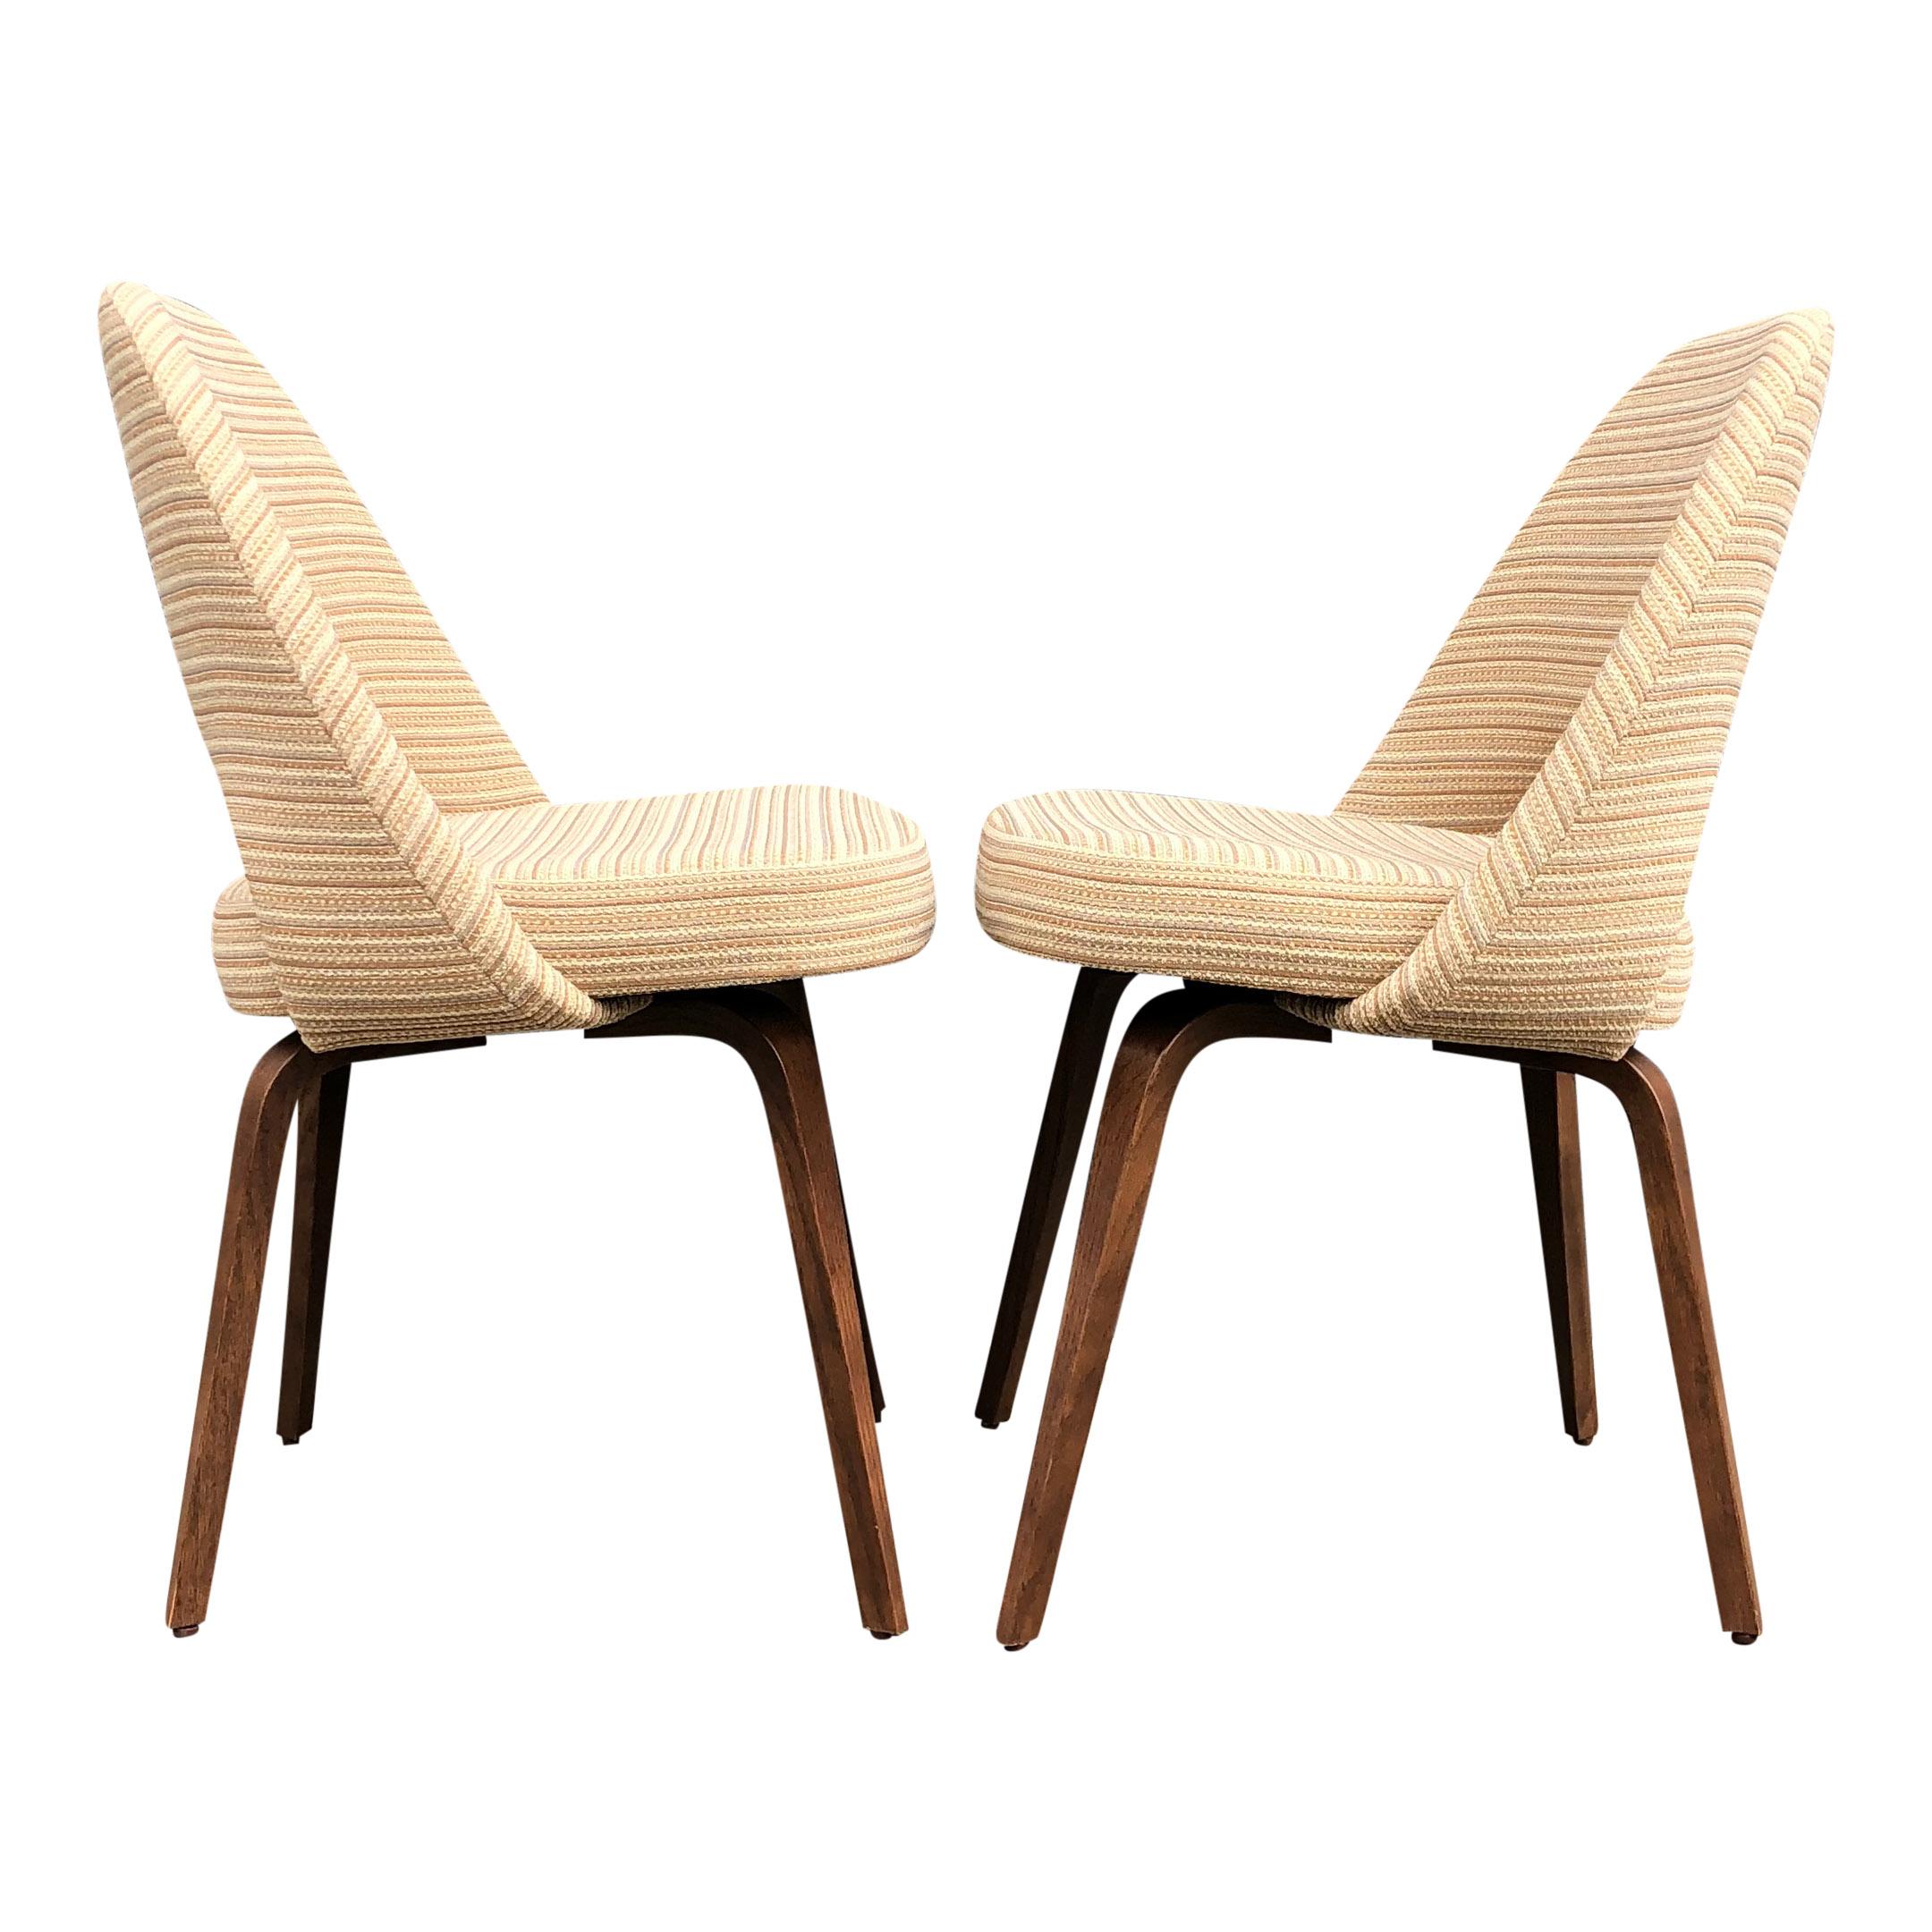 Mid-Century Modern Eero Saarinen for Knoll Side Chairs on Wooden Legs